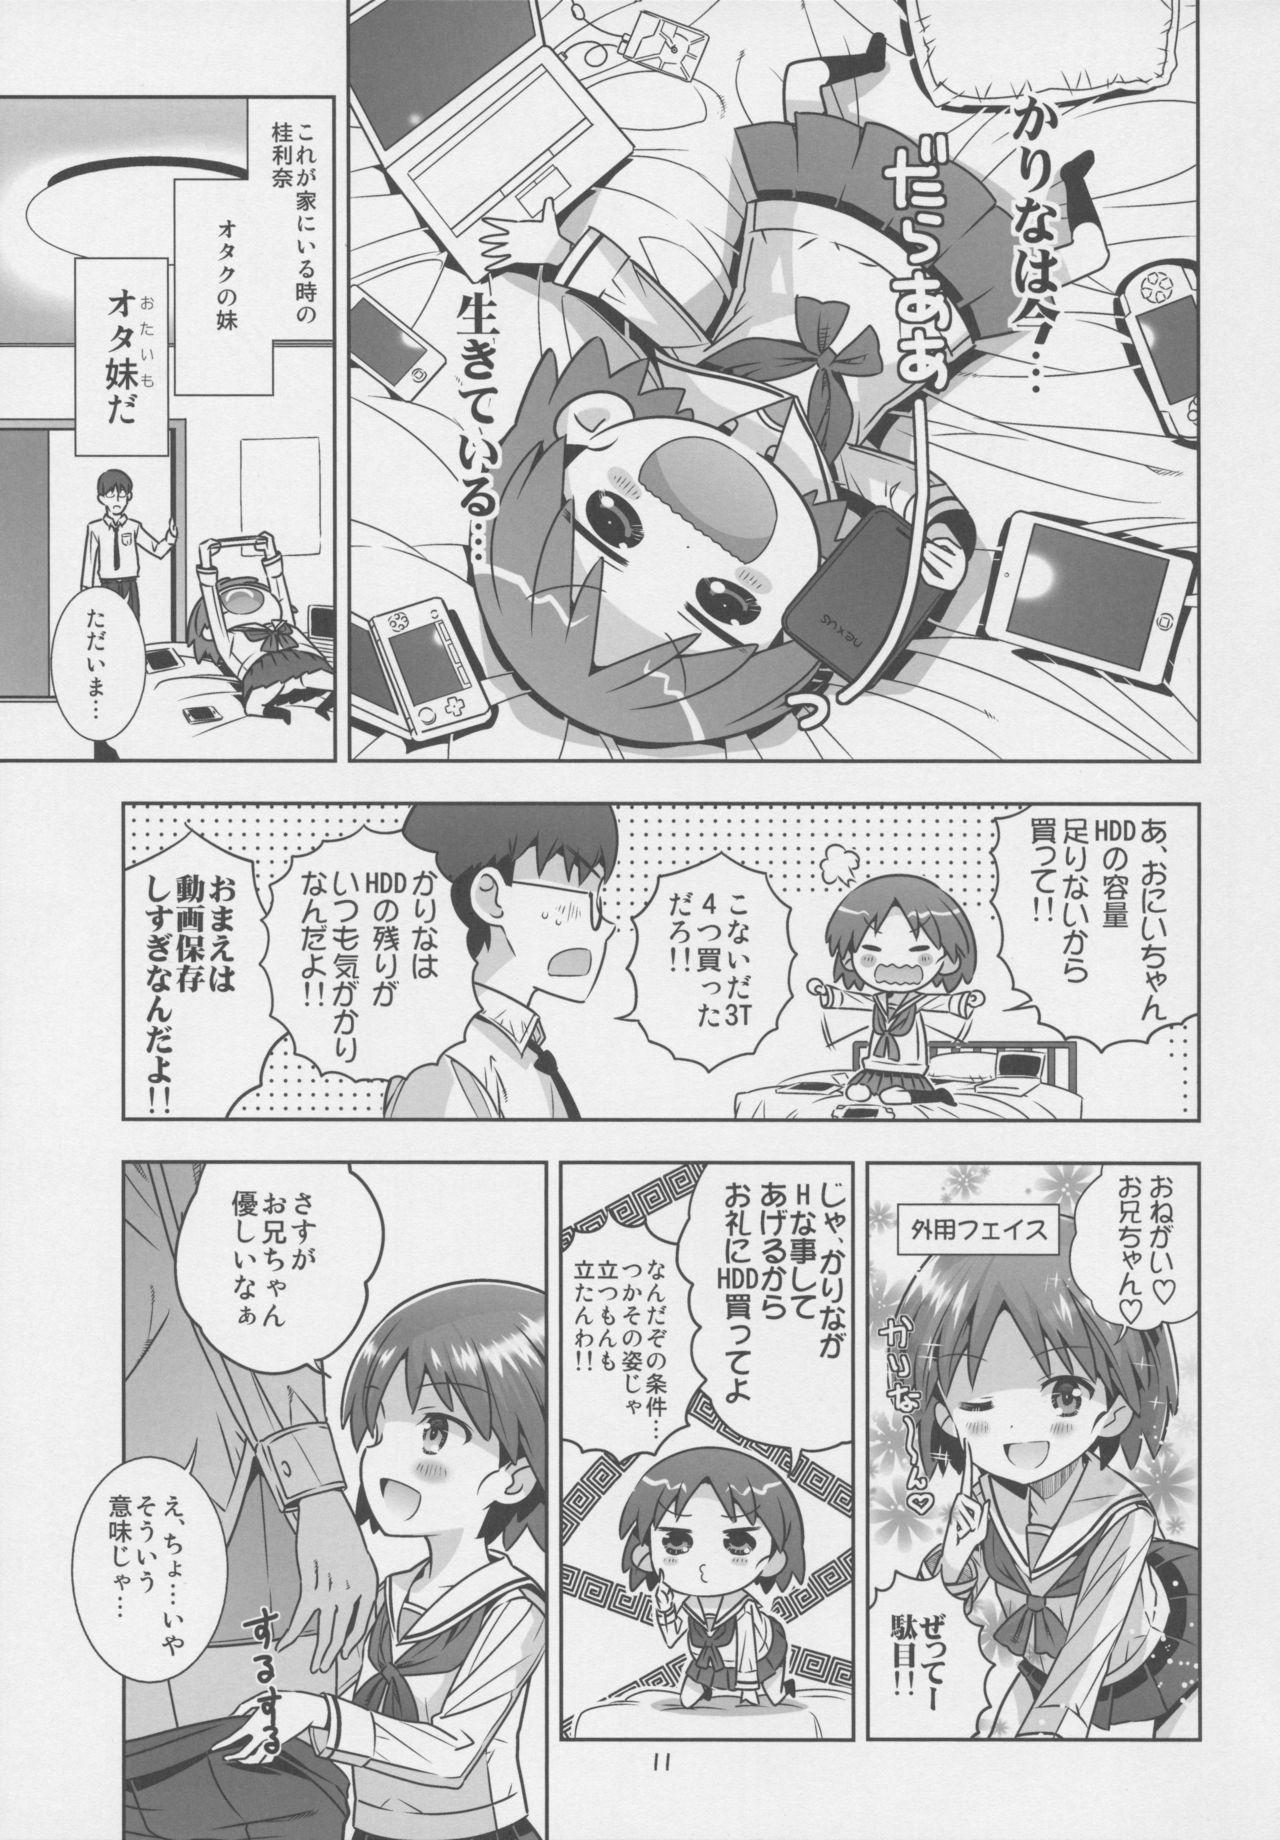 Ass Fuck "AV Shutsuen, Ganbarimasu!!" Ichinensei wa, M-ji Kaikyaku 3 Peace desu! - Girls und panzer Shot - Page 10